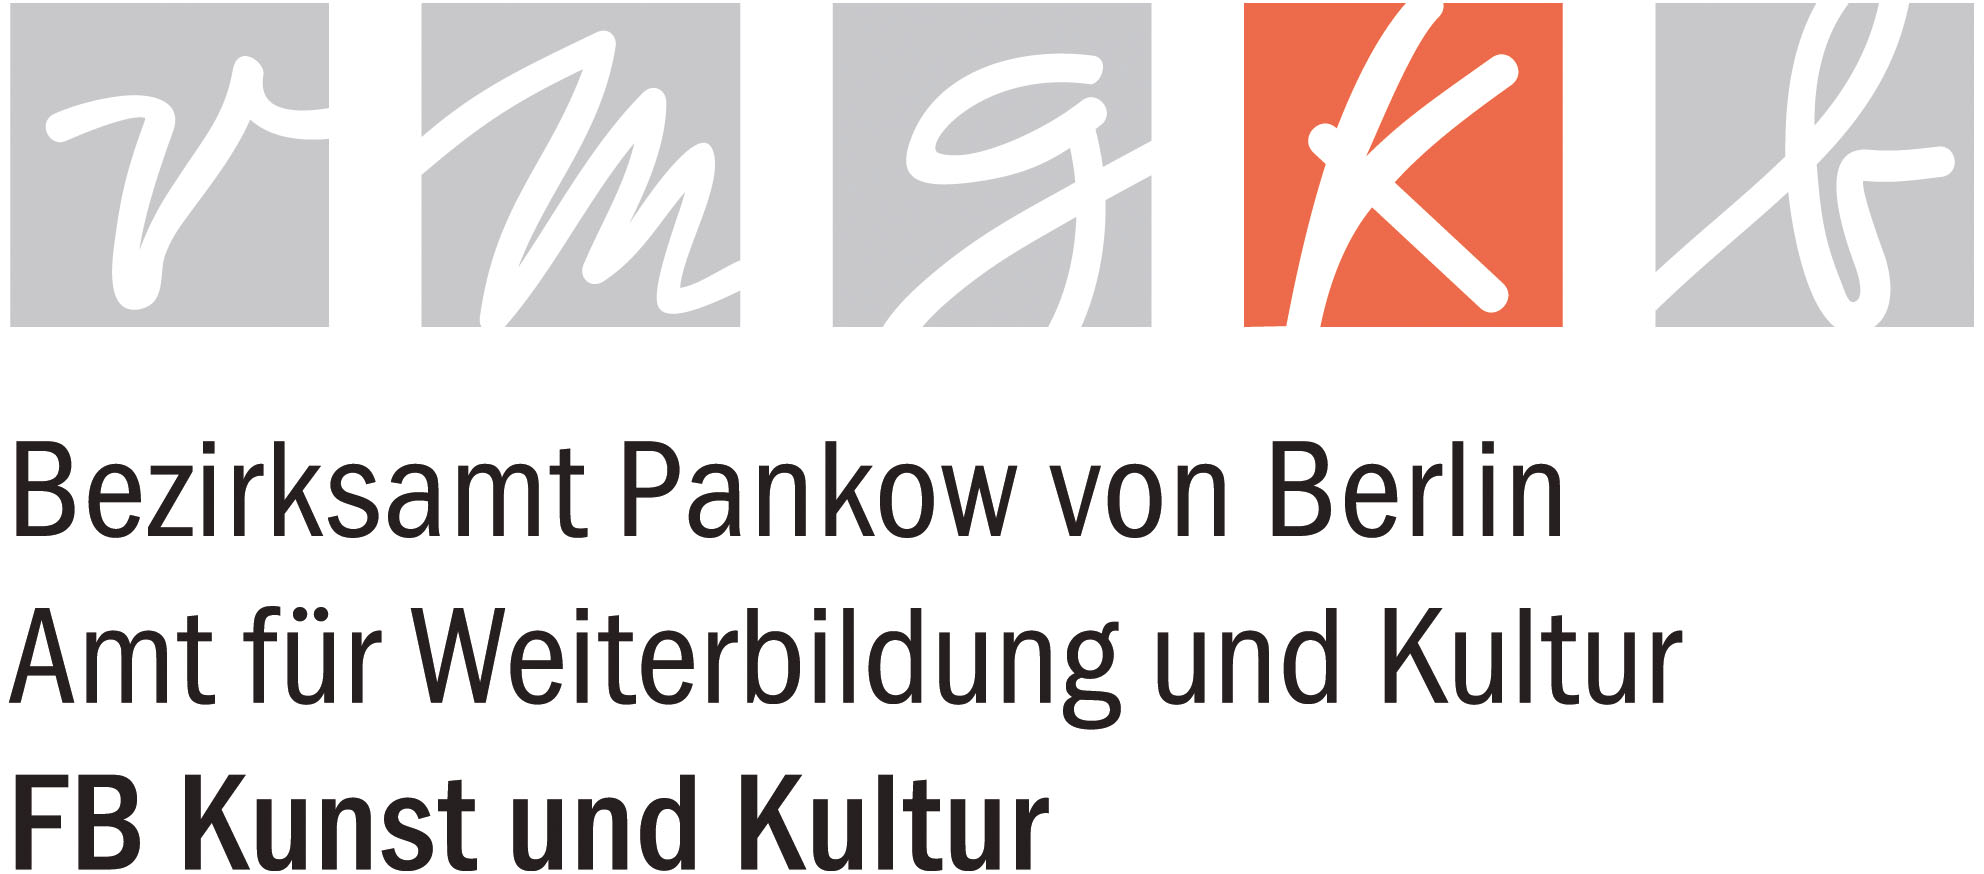 Bezirksamt Pankow - Fachbereich Kunst und Kultur